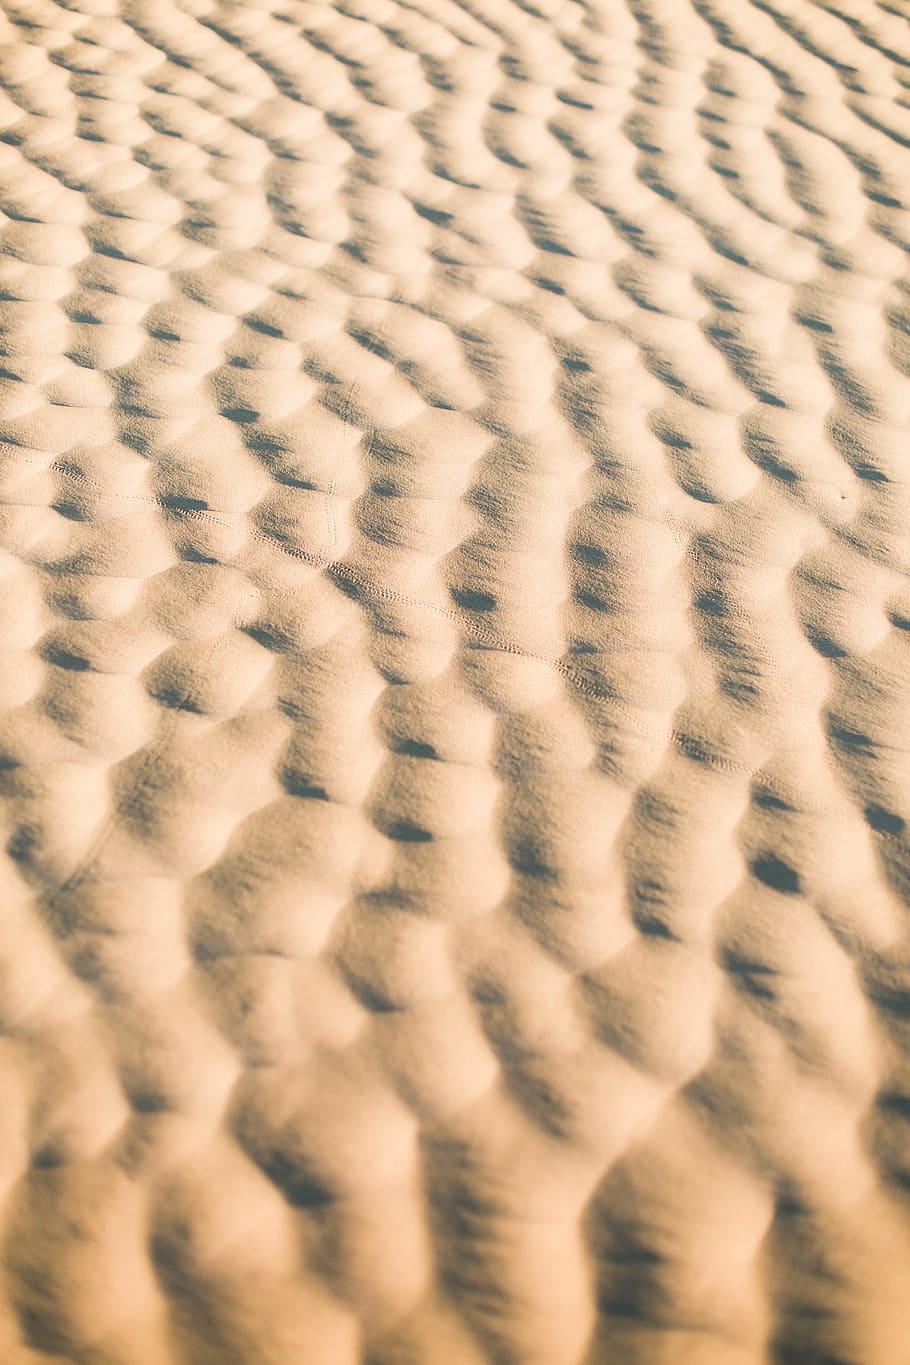 茶色の砂, 砂, ビーチ, 波, 自然, 屋外, 砂漠, 砂丘, パターン, 背景